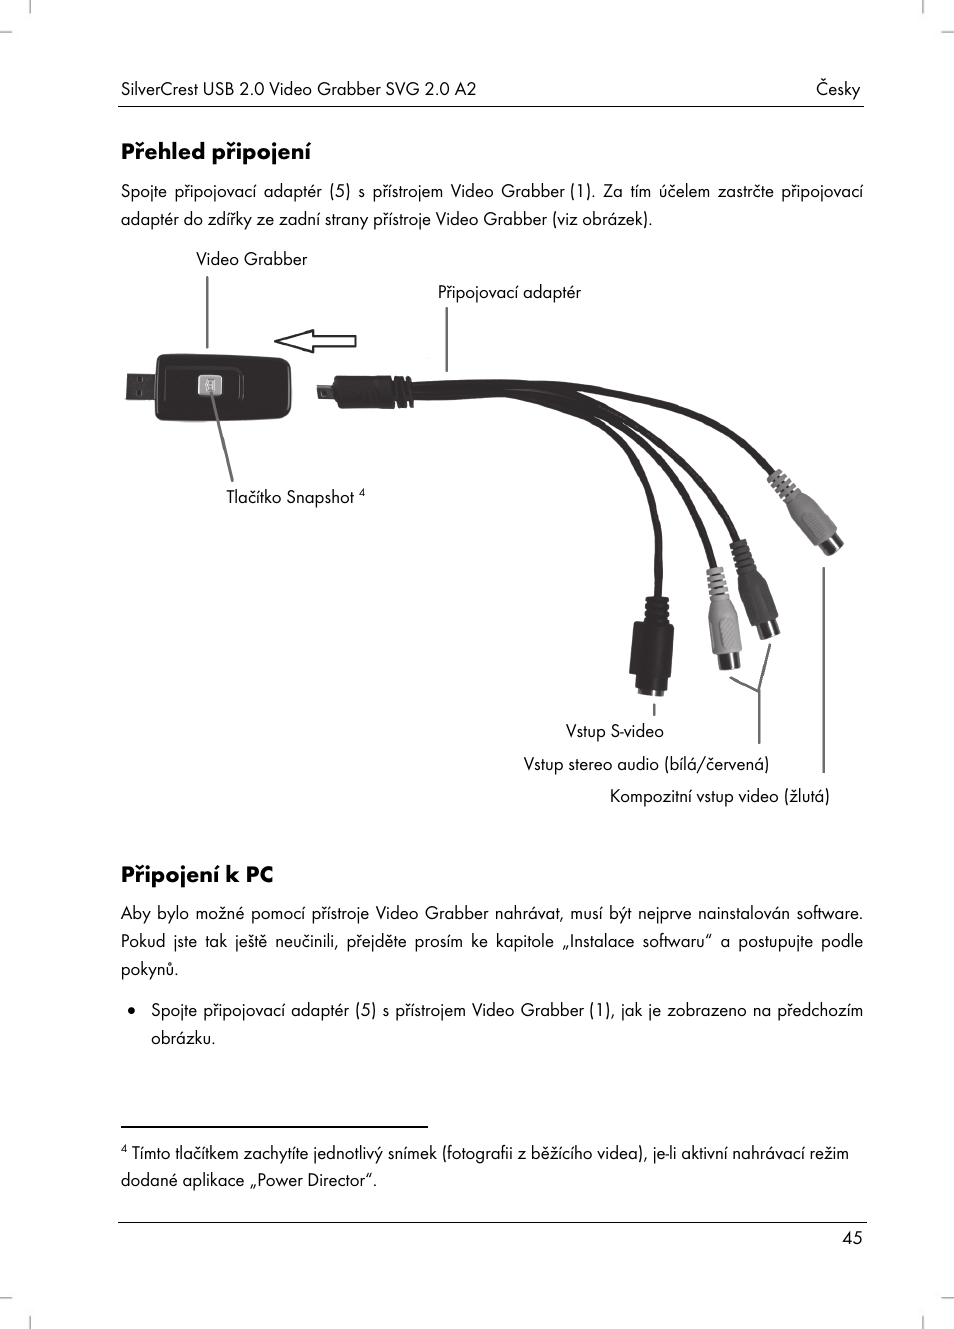 Přehled připojení, Připojení k pc | Silvercrest SVG 2.0 A2 User Manual |  Page 46 / 63